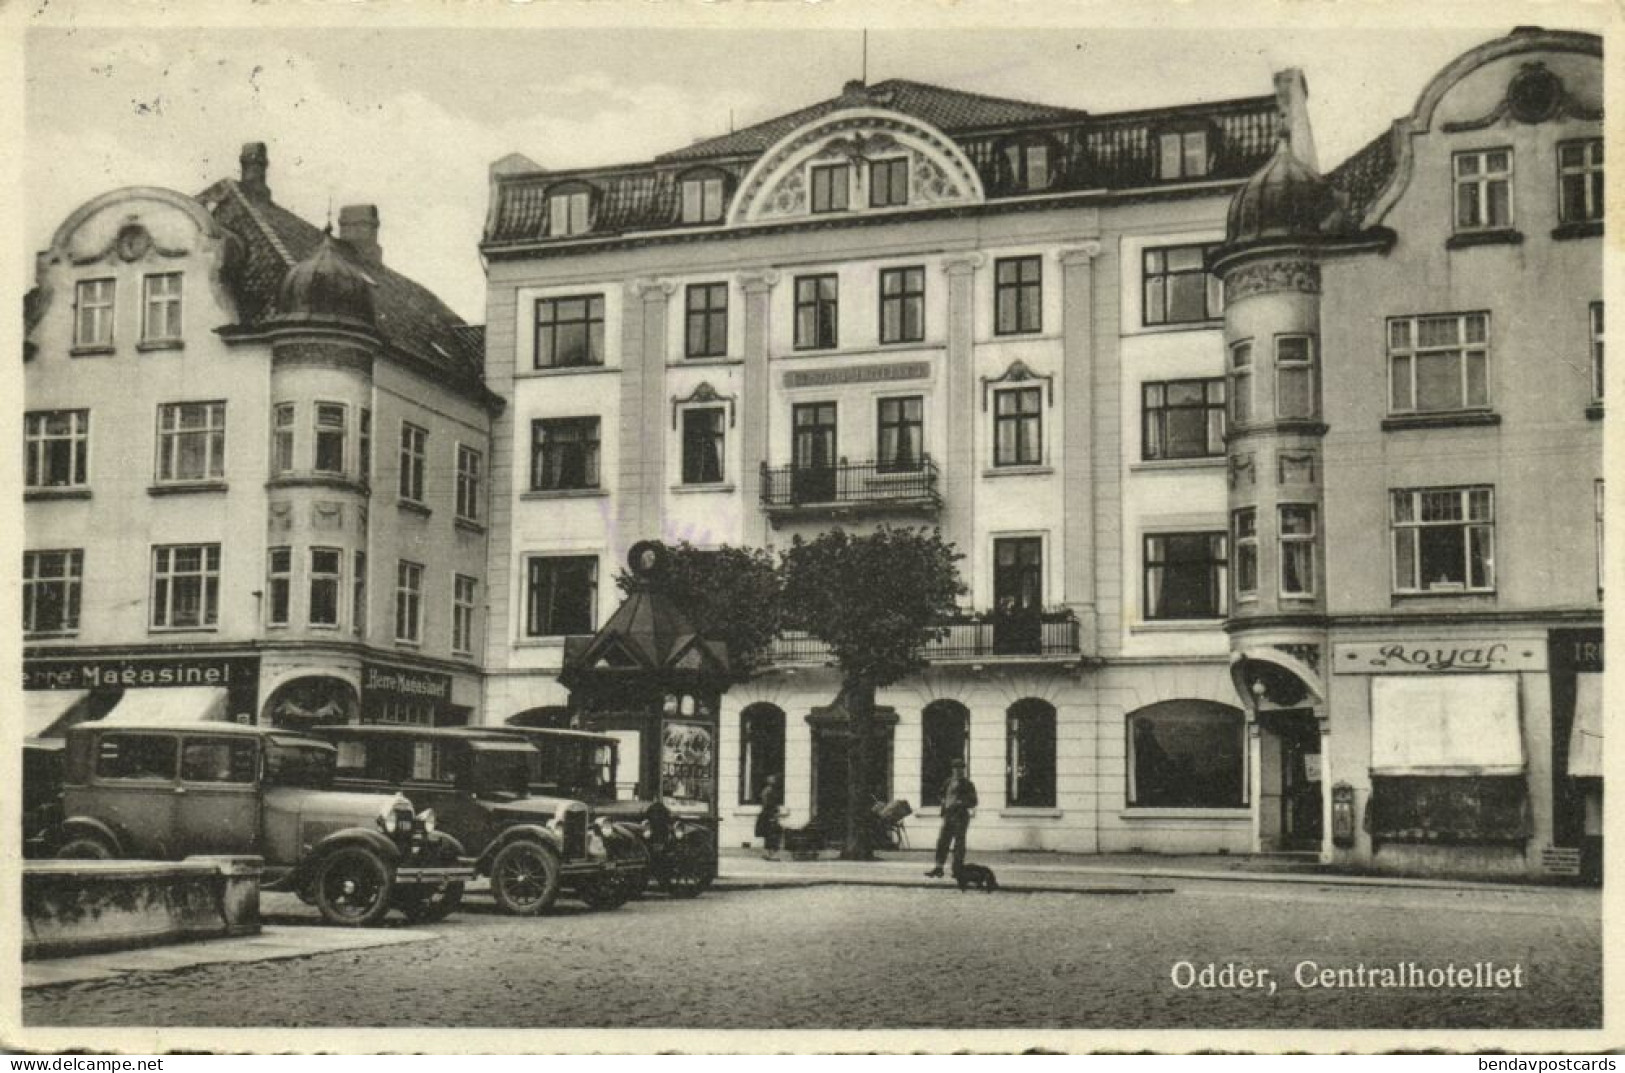 Denmark, ODDER, Centralhotellet, Hotel, Car (1940s) Postcard - Dänemark